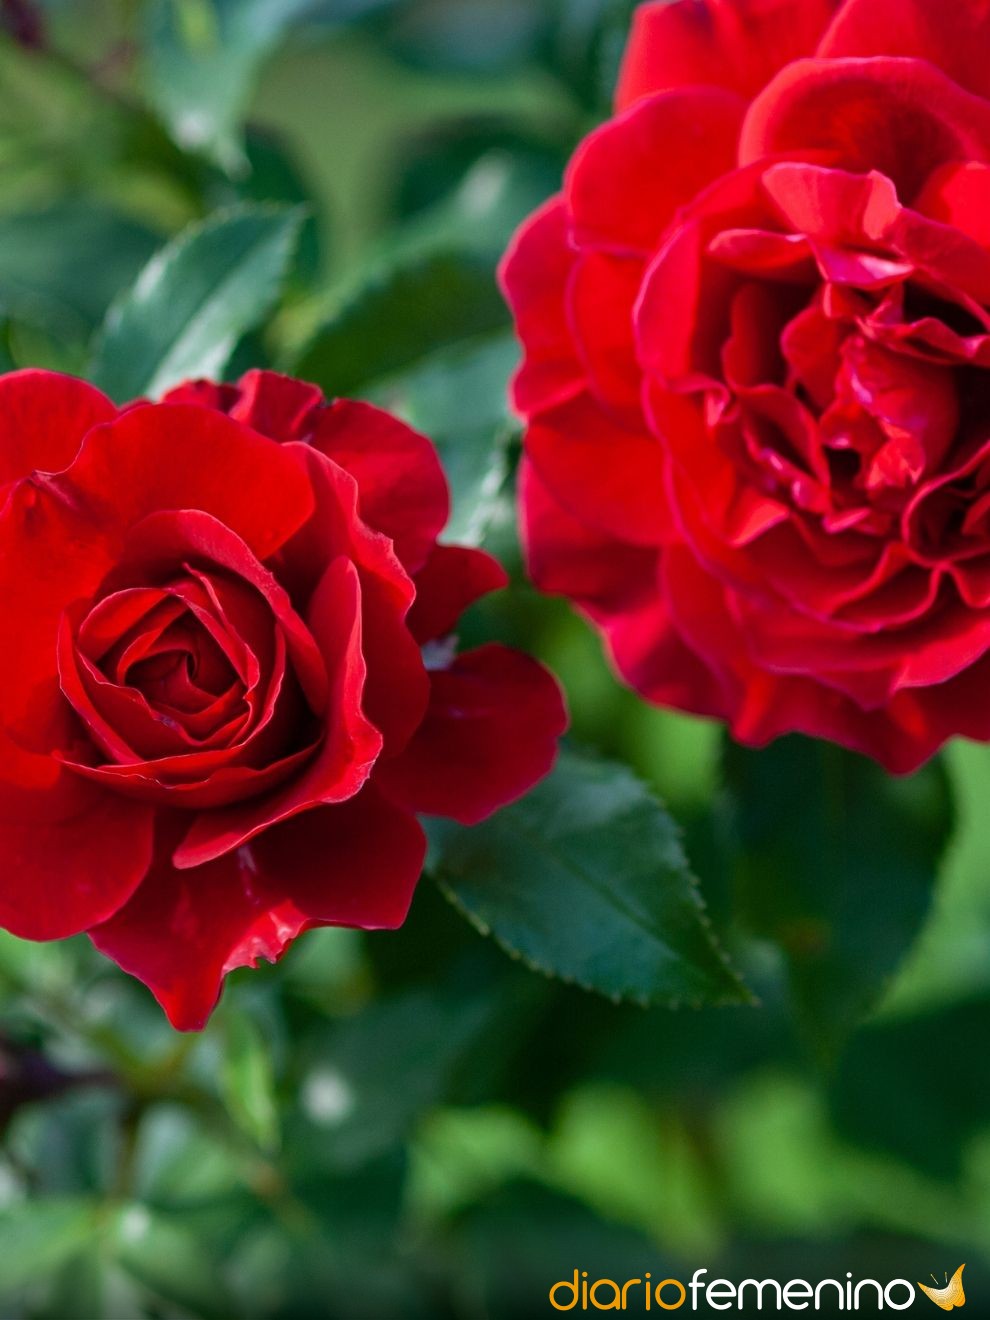 Soñar con flores rojas: sus significados relacionados con el amor